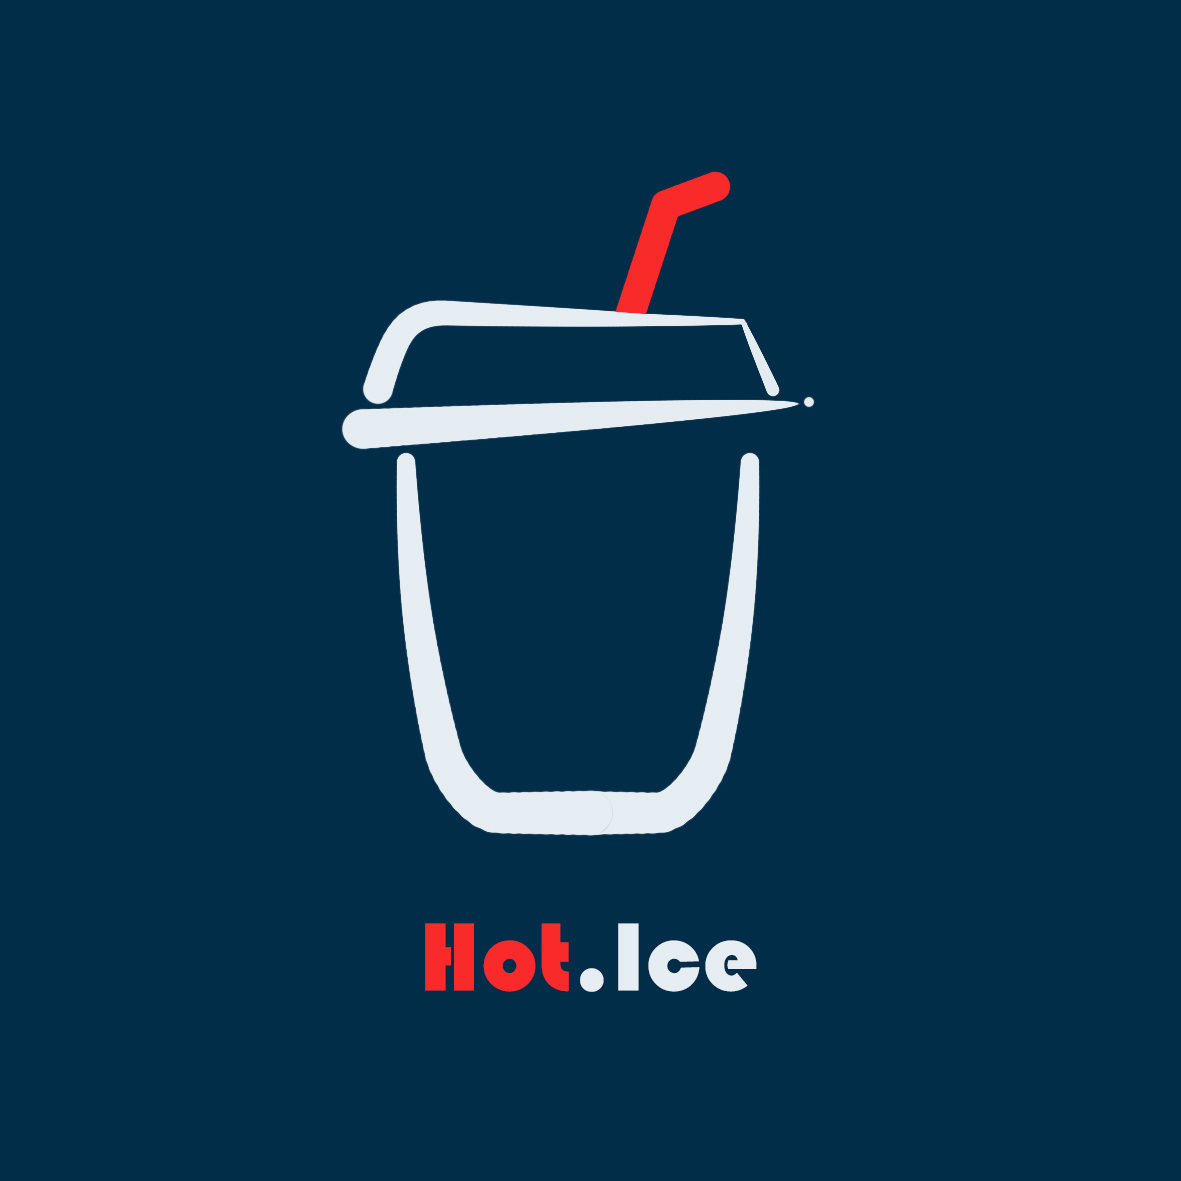 奶茶店logo